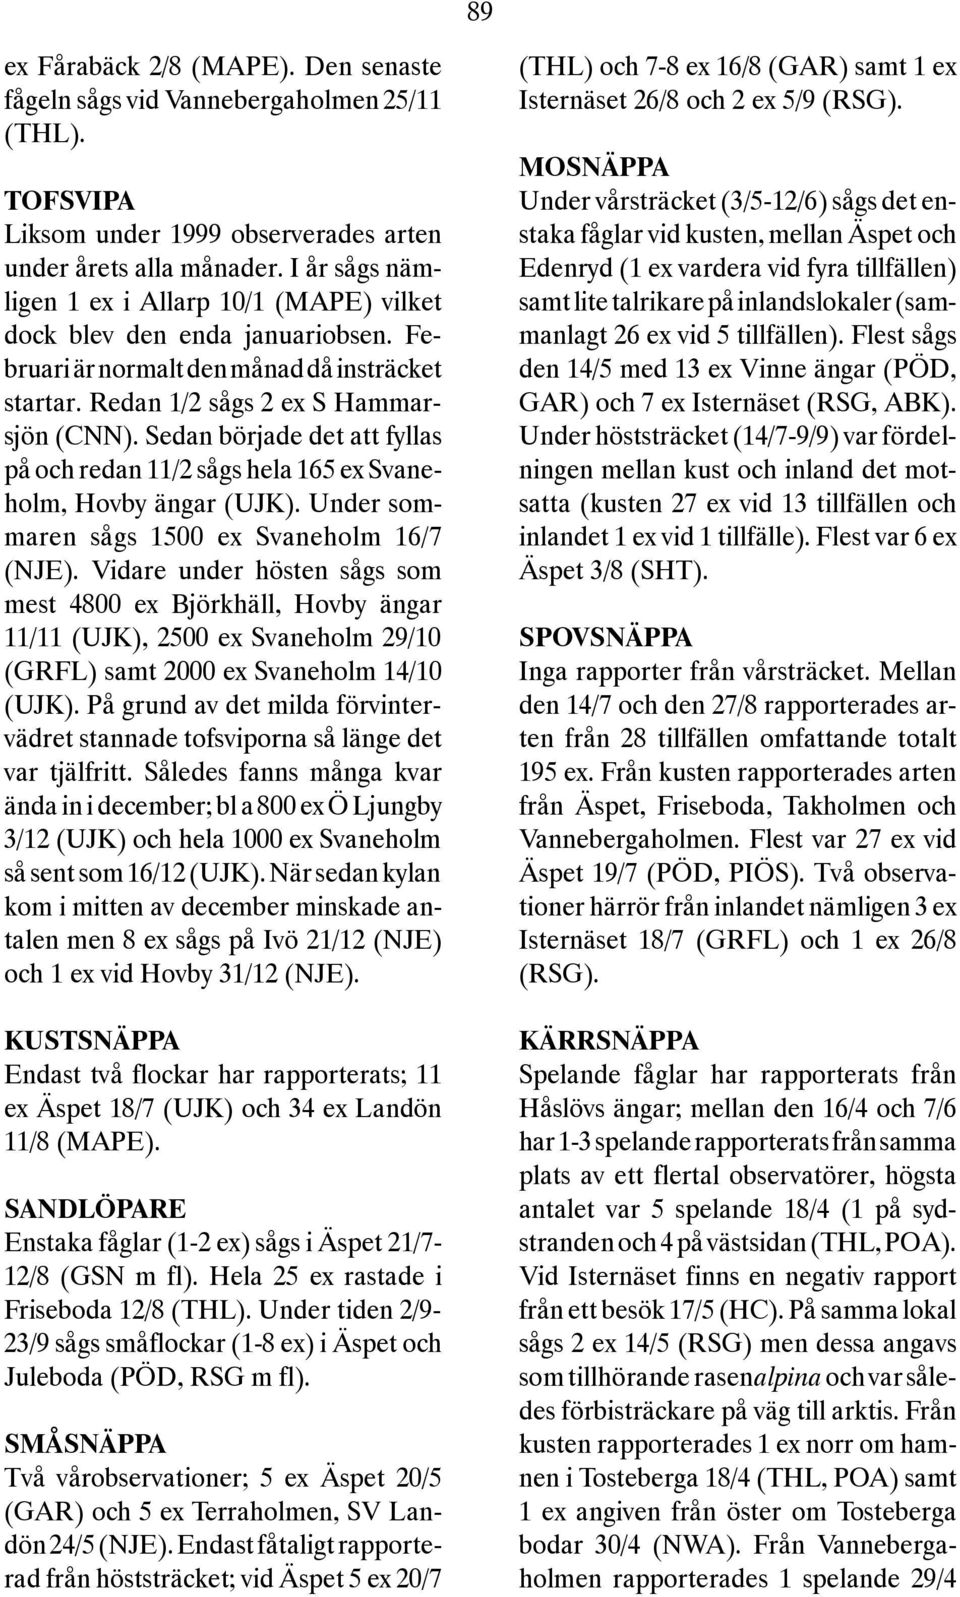 Sedan började det att fyllas på och redan 11/2 sågs hela 165 ex Svaneholm, Hovby ängar (UJK). Under sommaren sågs 1500 ex Svaneholm 16/7 (NJE).